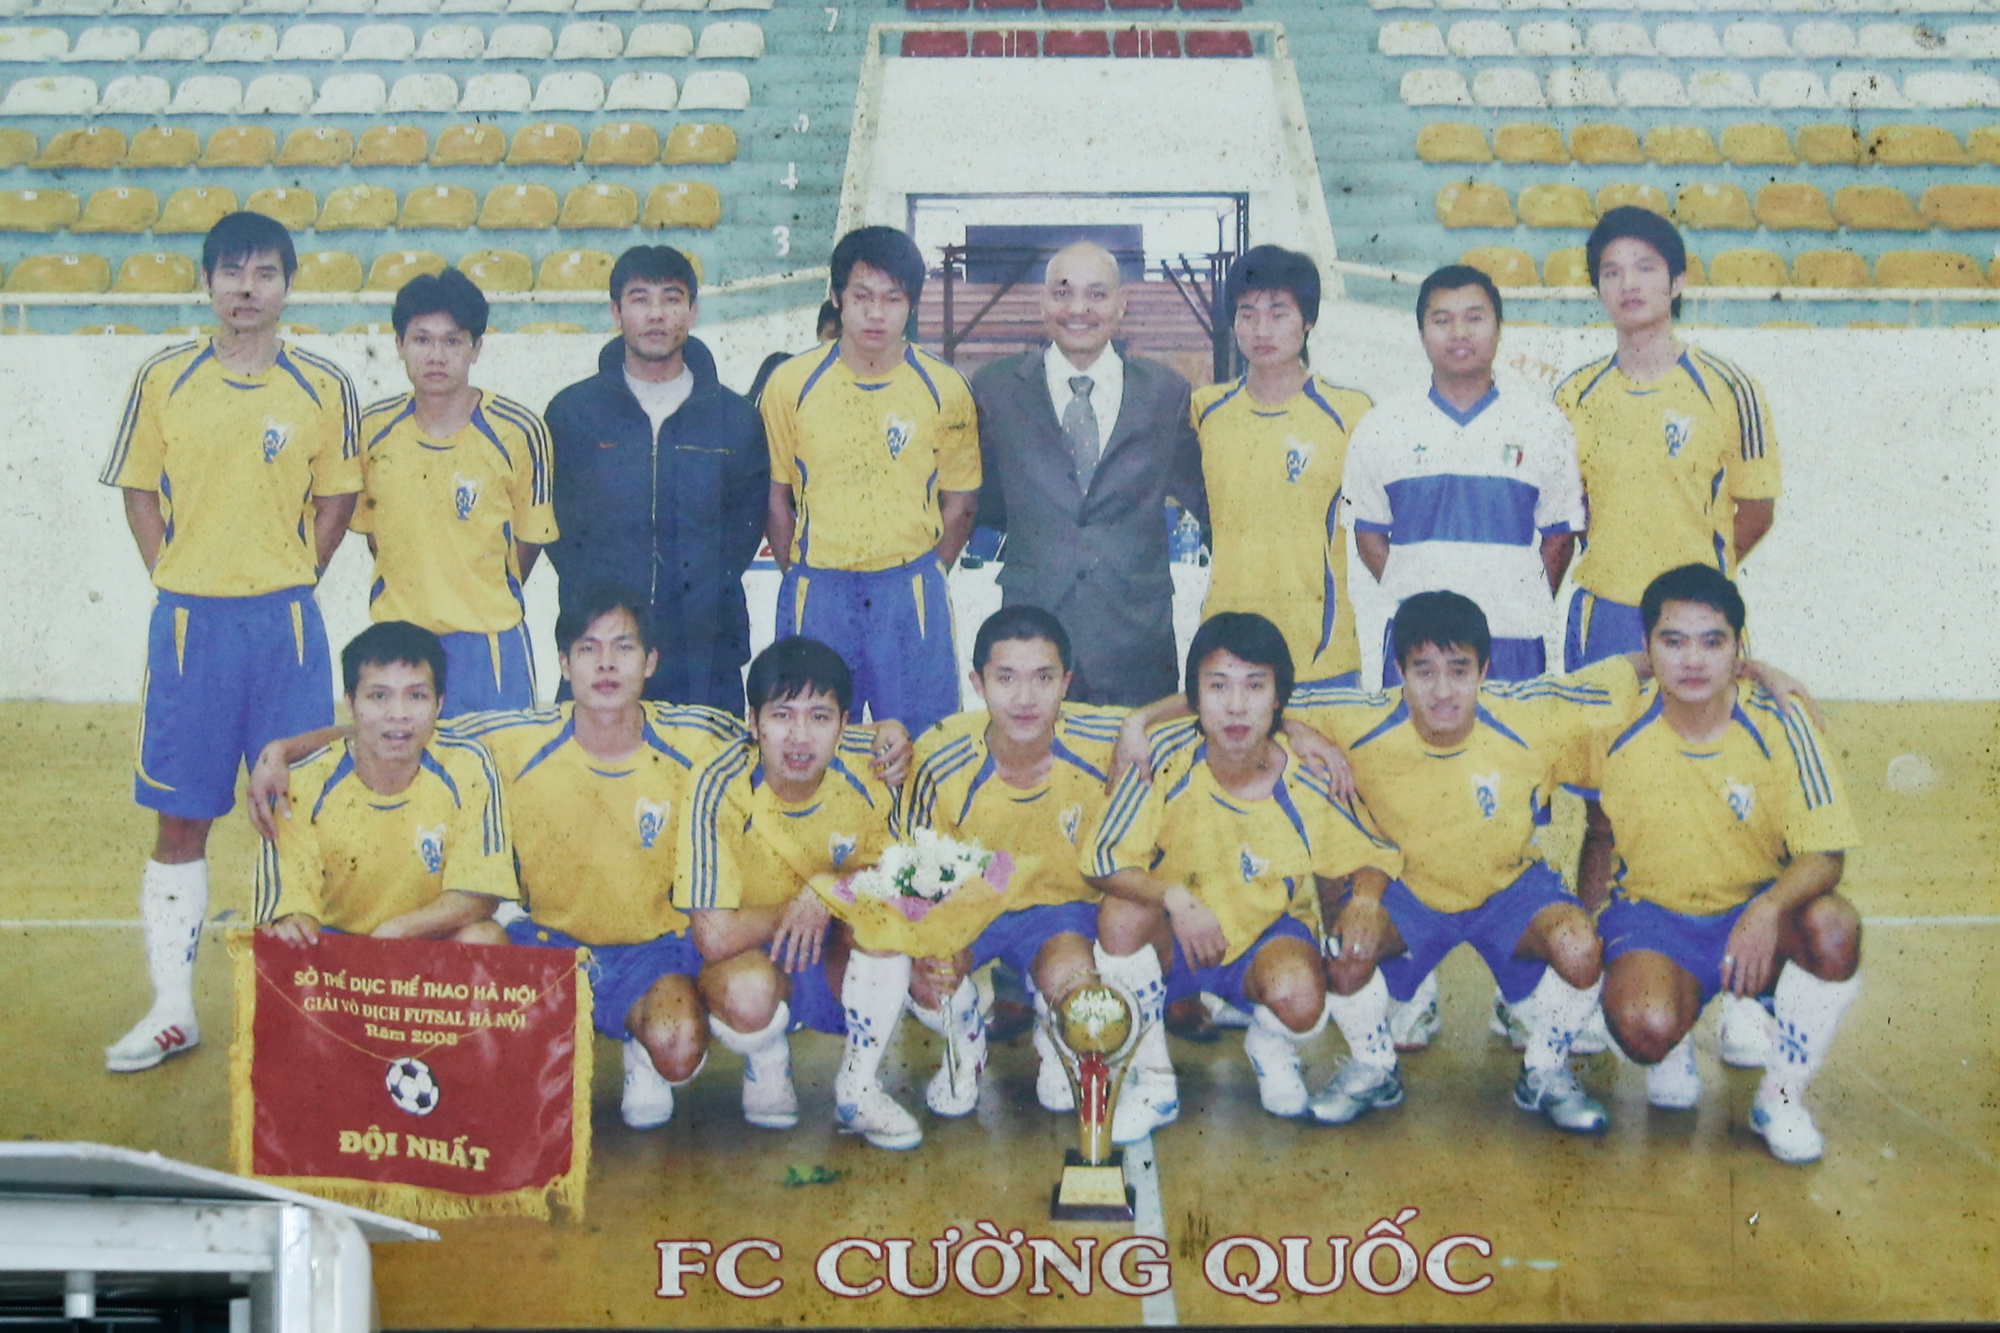 Ông bầu Trần Quốc Cường cùng FC Cường Quốc vô địch Giải Futsal Hà Nội năm 2008. (Ảnh: Minh Chiến/Vietnam+)